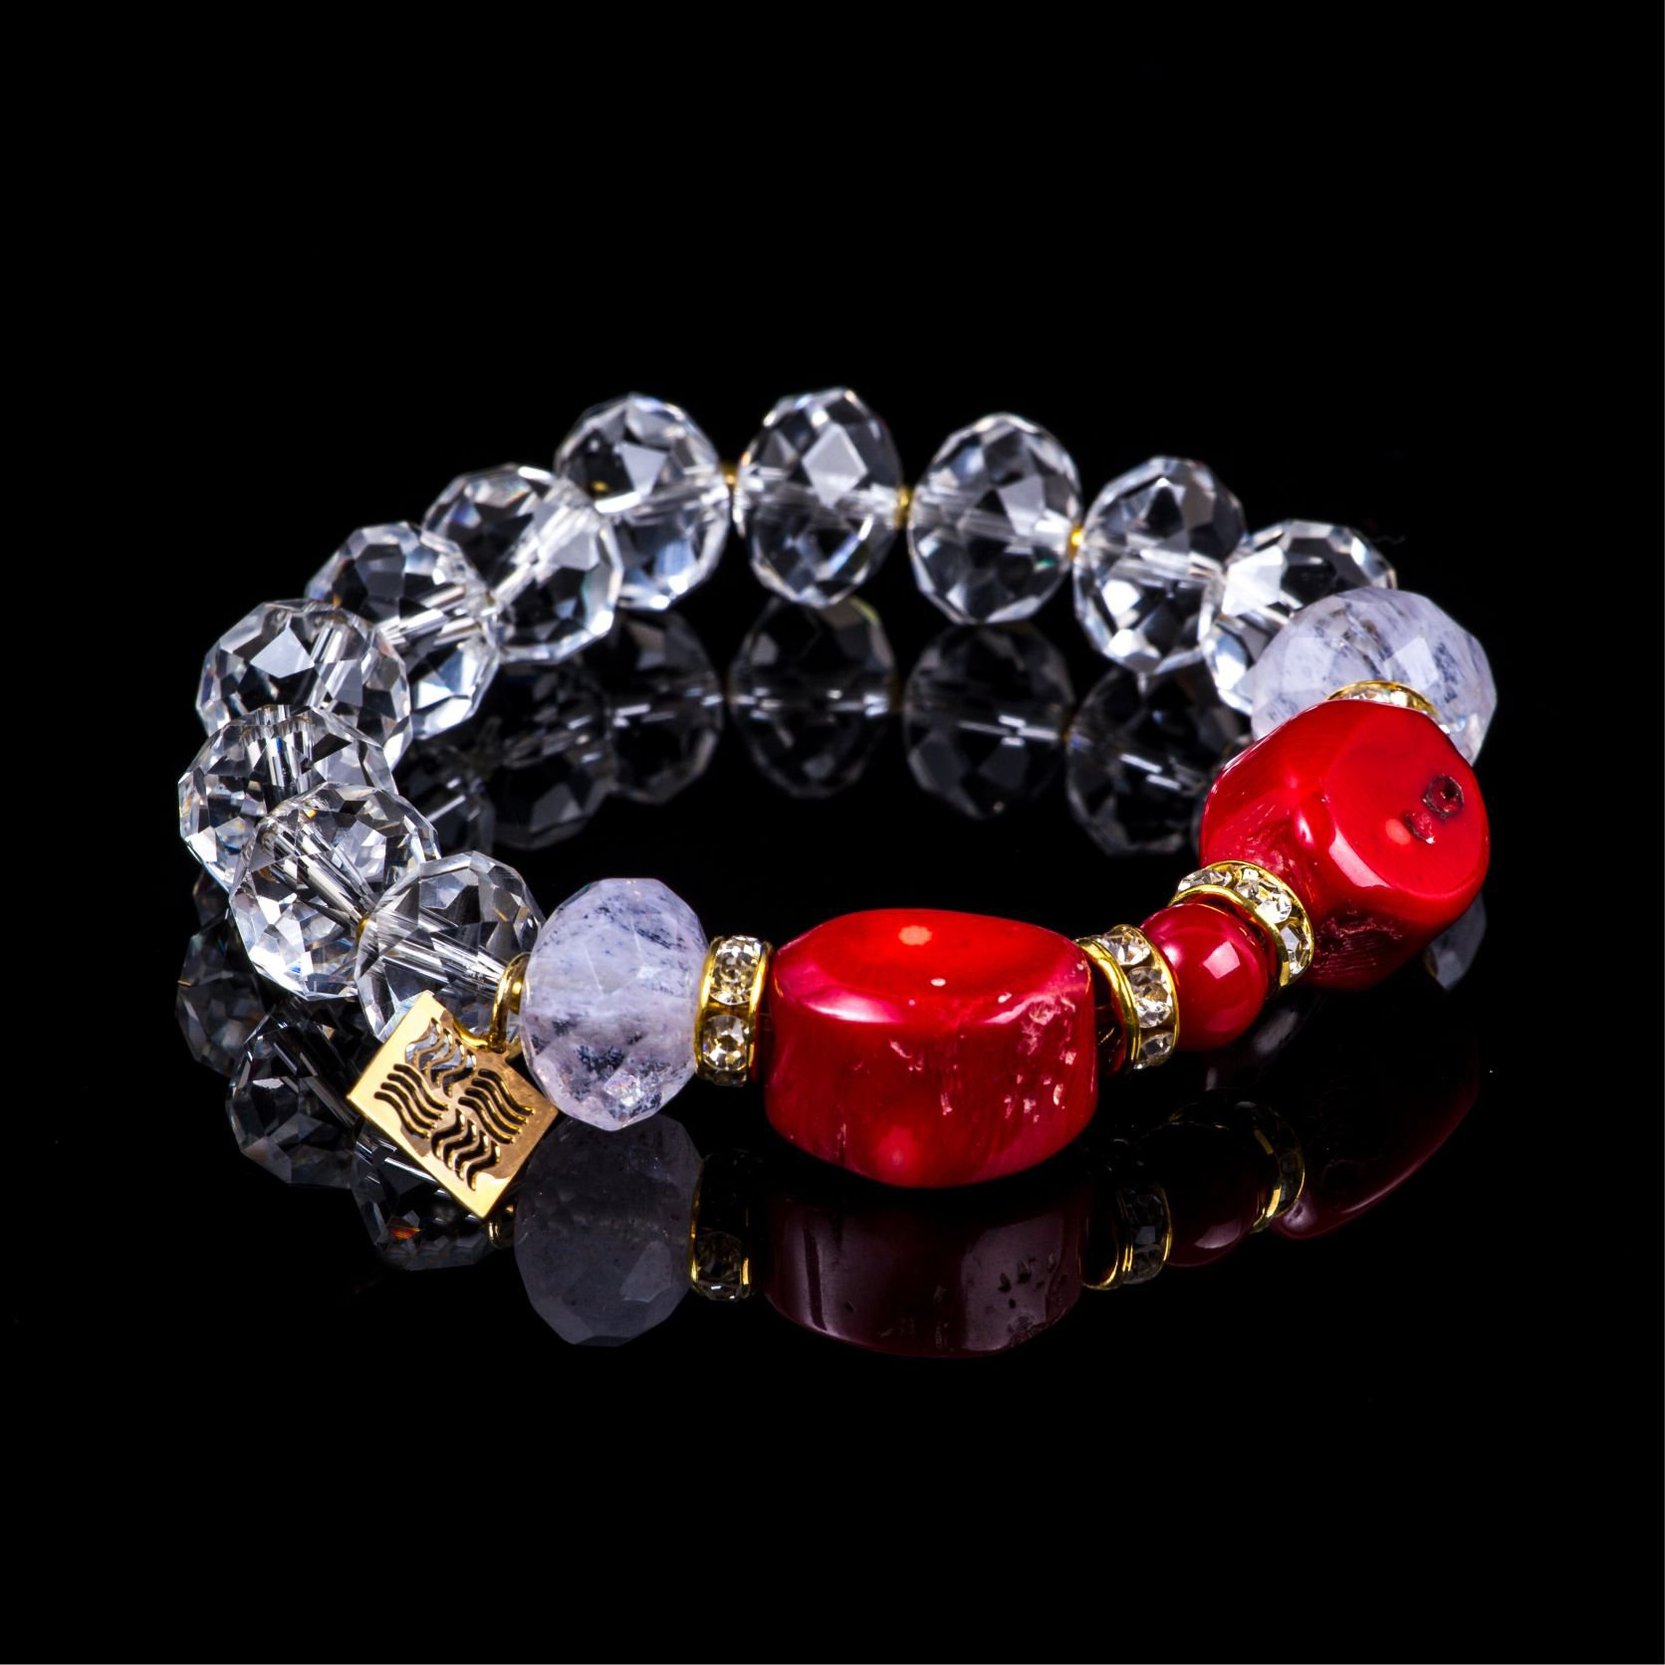 Bracelet of collection "Crystal Symphony"